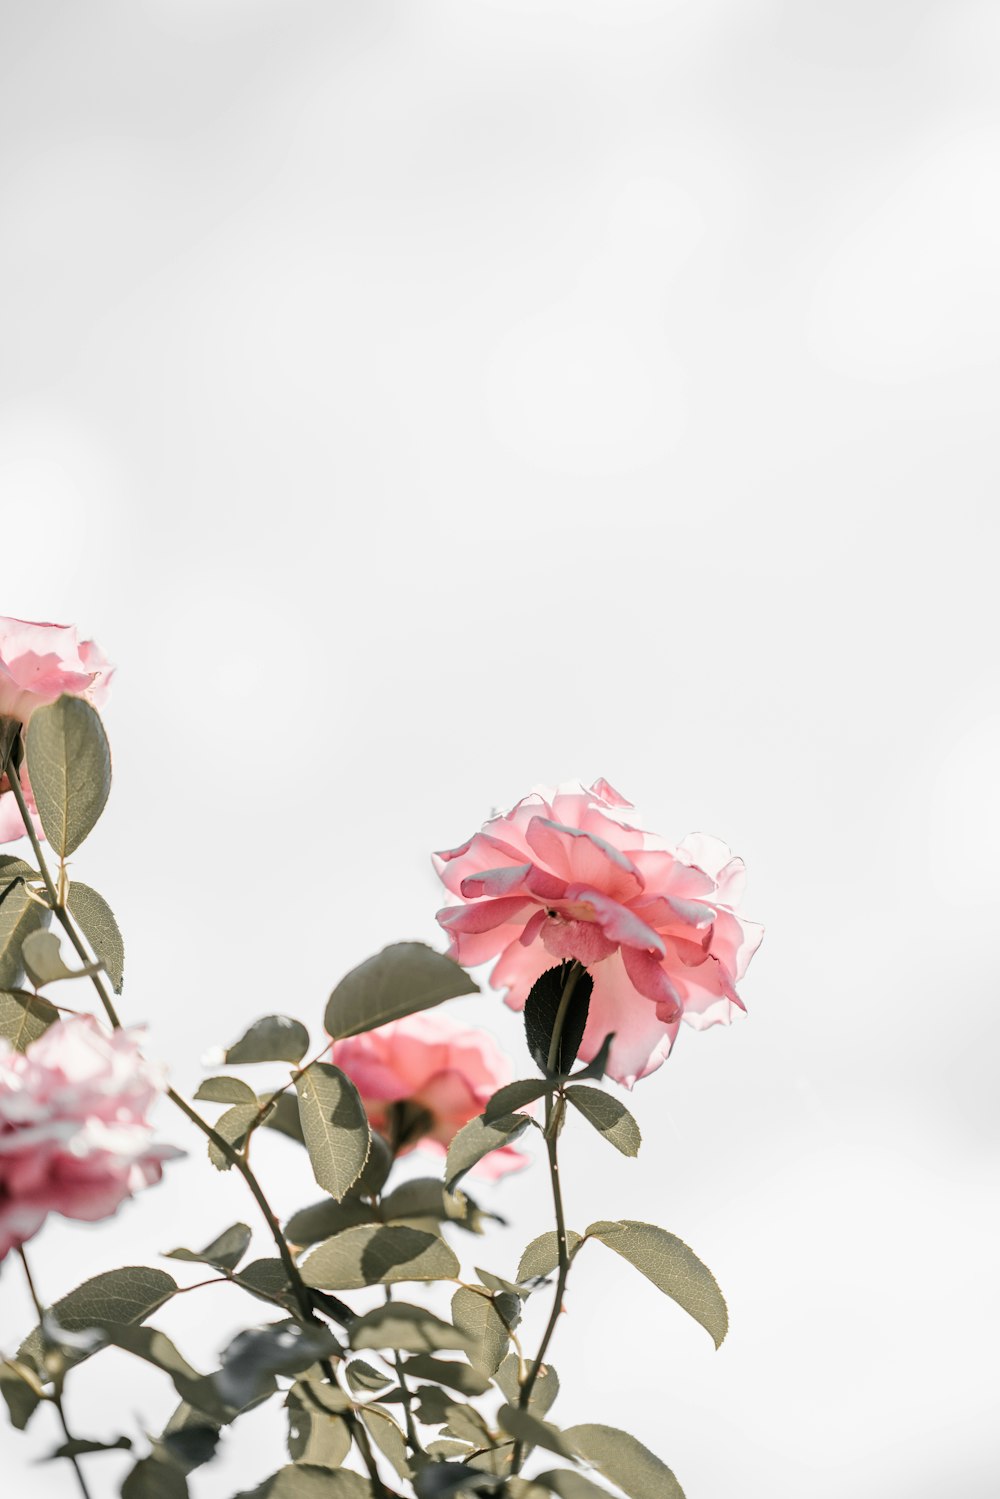 Light Pink Rose Pictures | Download Free Images on Unsplash